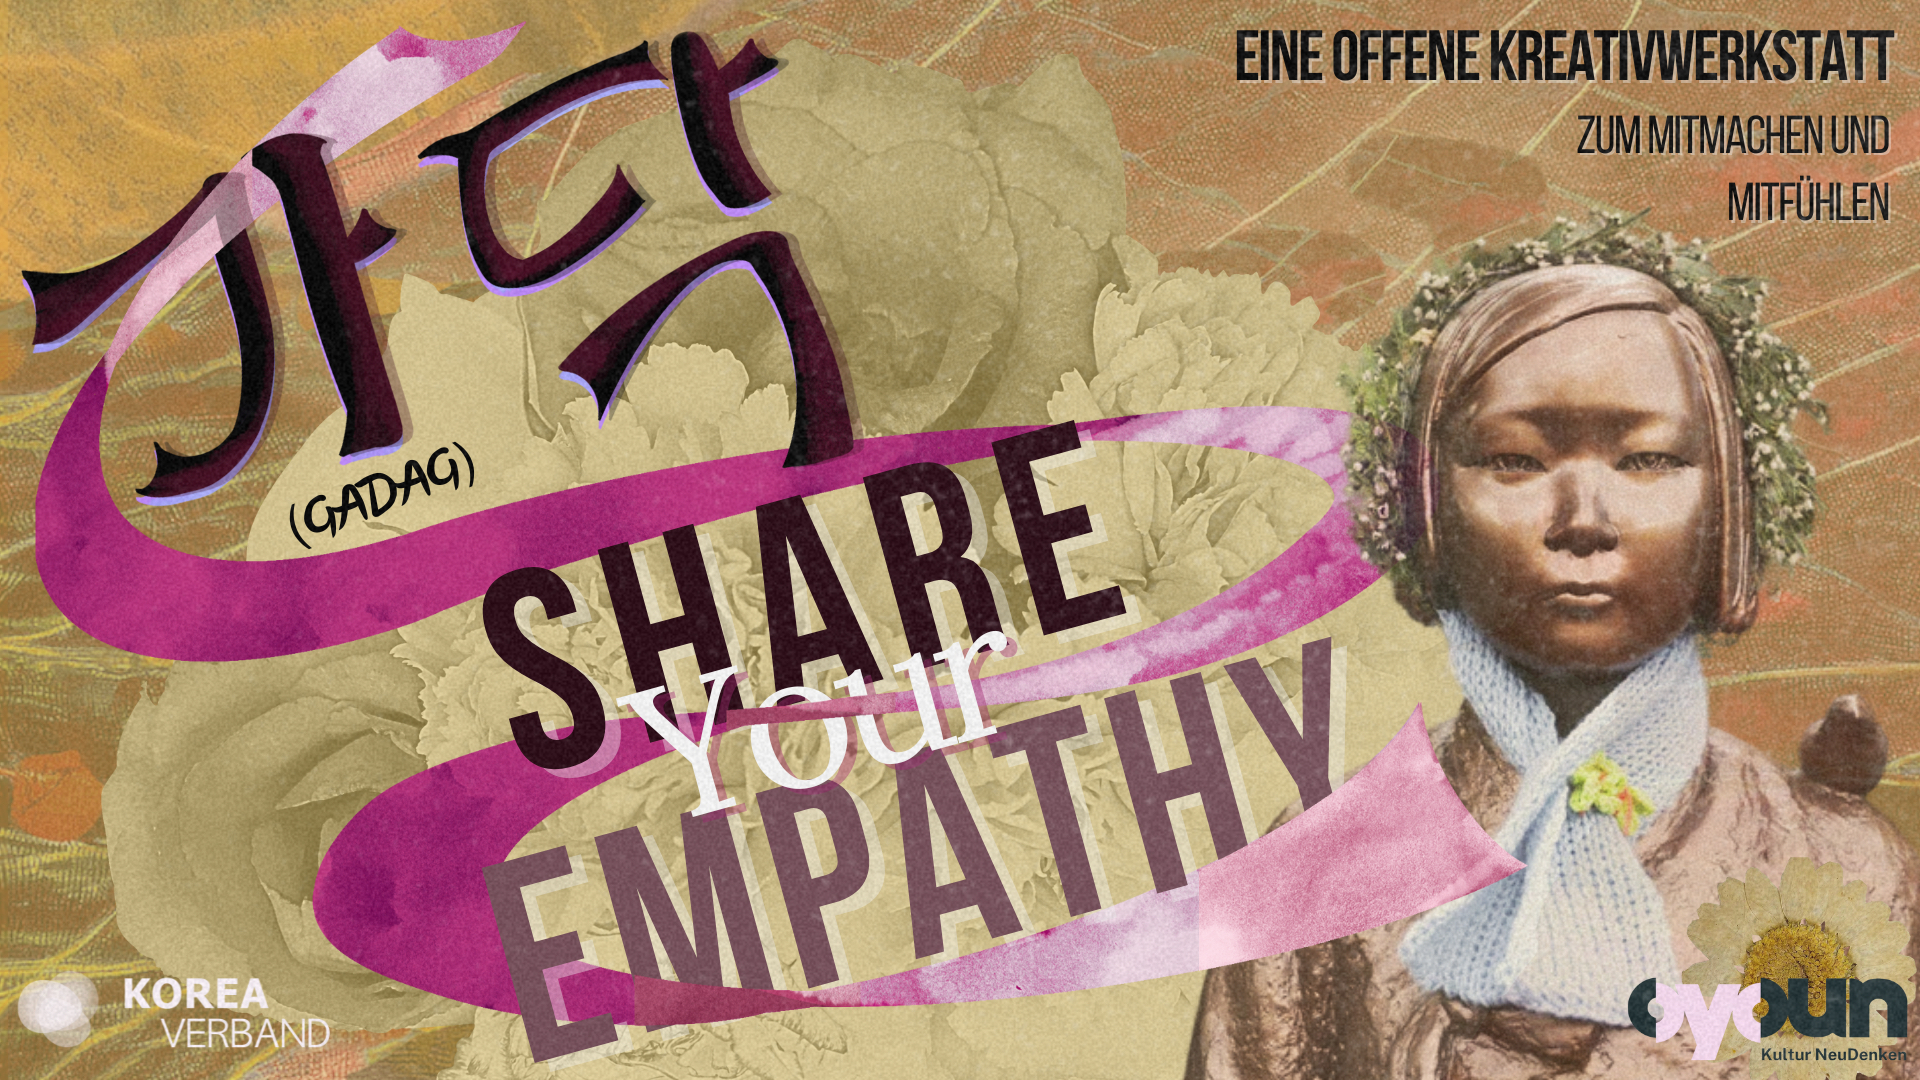 English: Creative workshop poster with a historical figure and text "Share Your Empathy." Deutsch: Kreativwerkstatt-Poster mit historischer Figur und dem Text "Teile Deine Empathie."